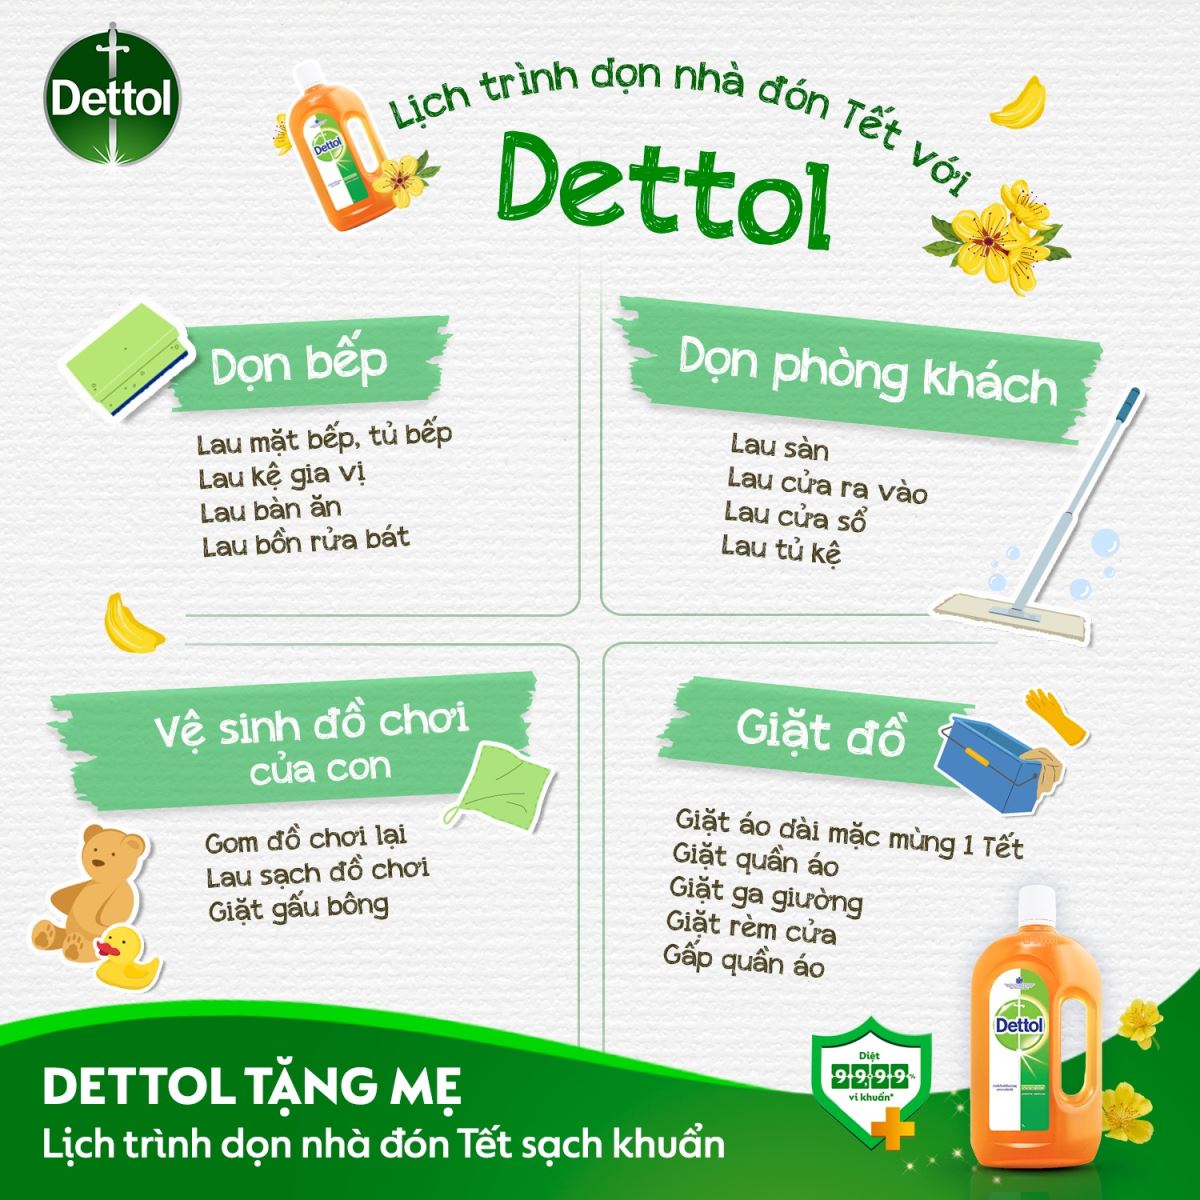 Dettol - Giải pháp tẩy rửa thông minh cho ngôi nhà của bạn